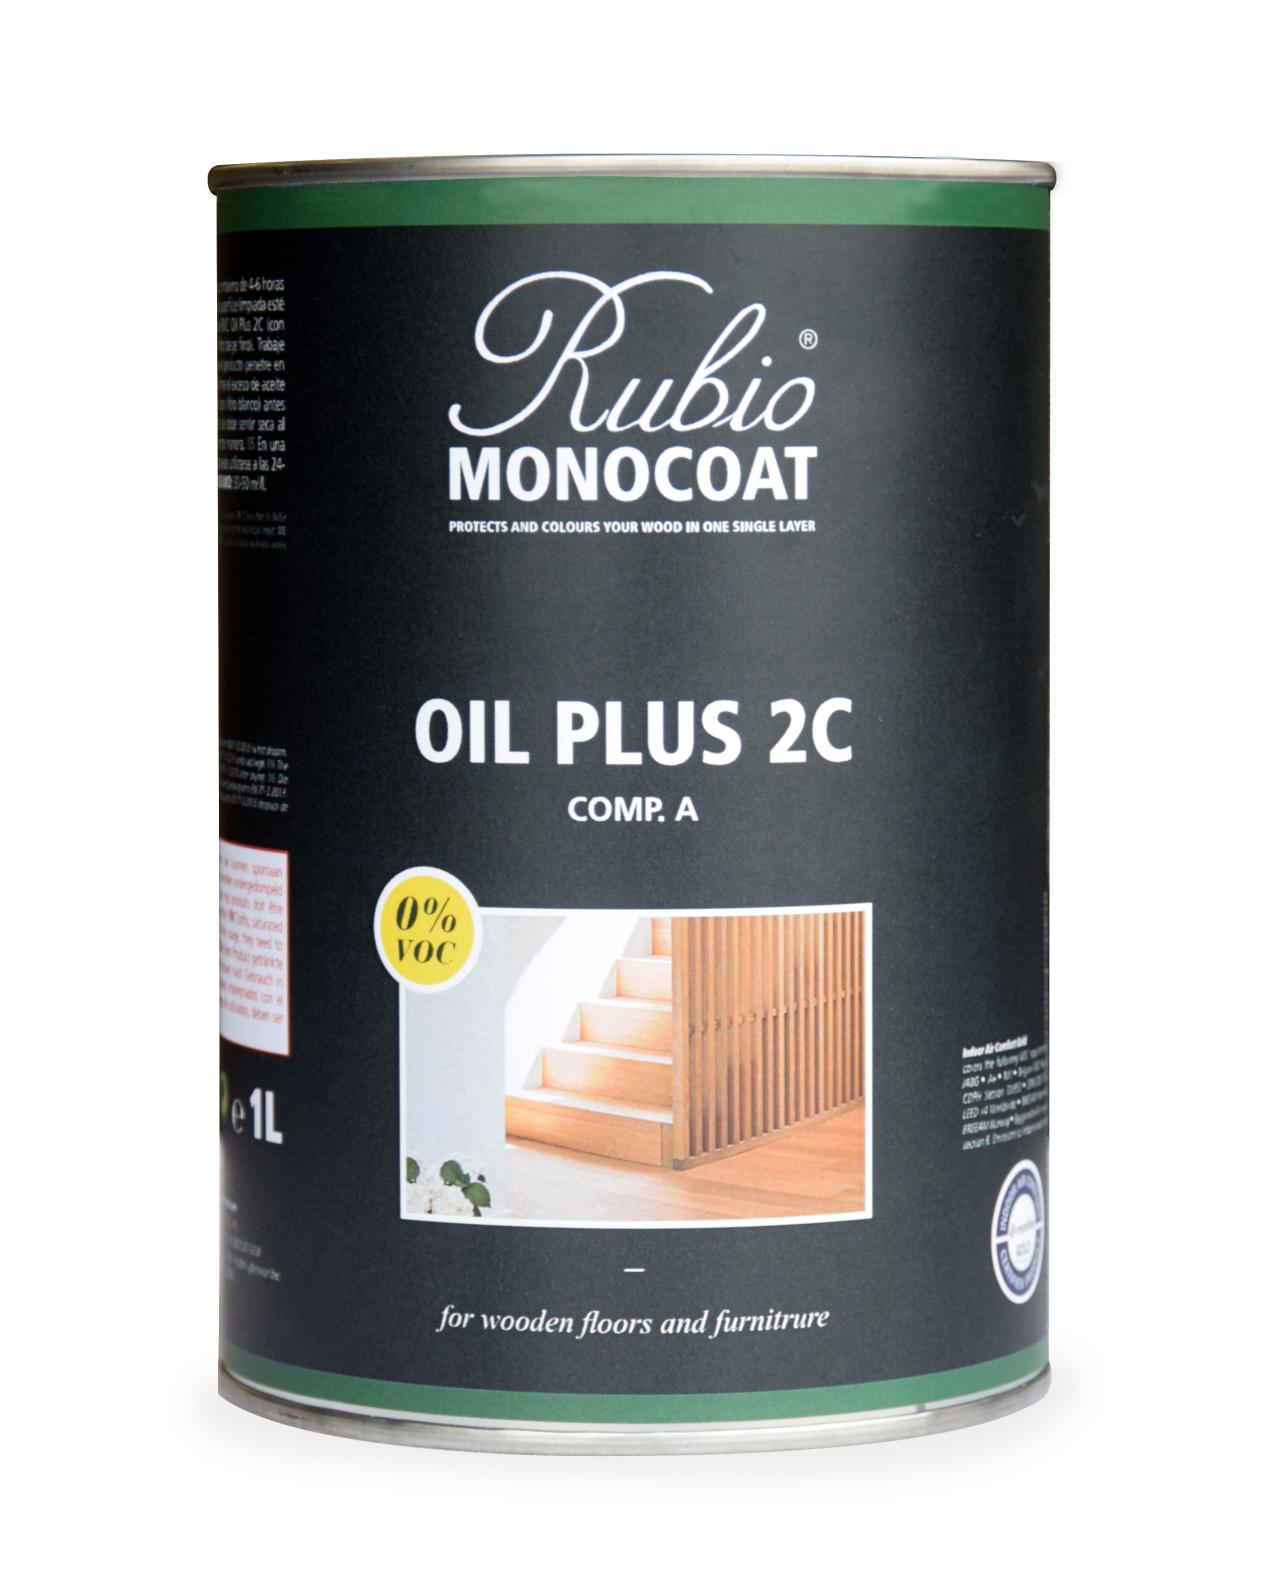 Rubio Monocoat Oil + 2C Pure 1 L